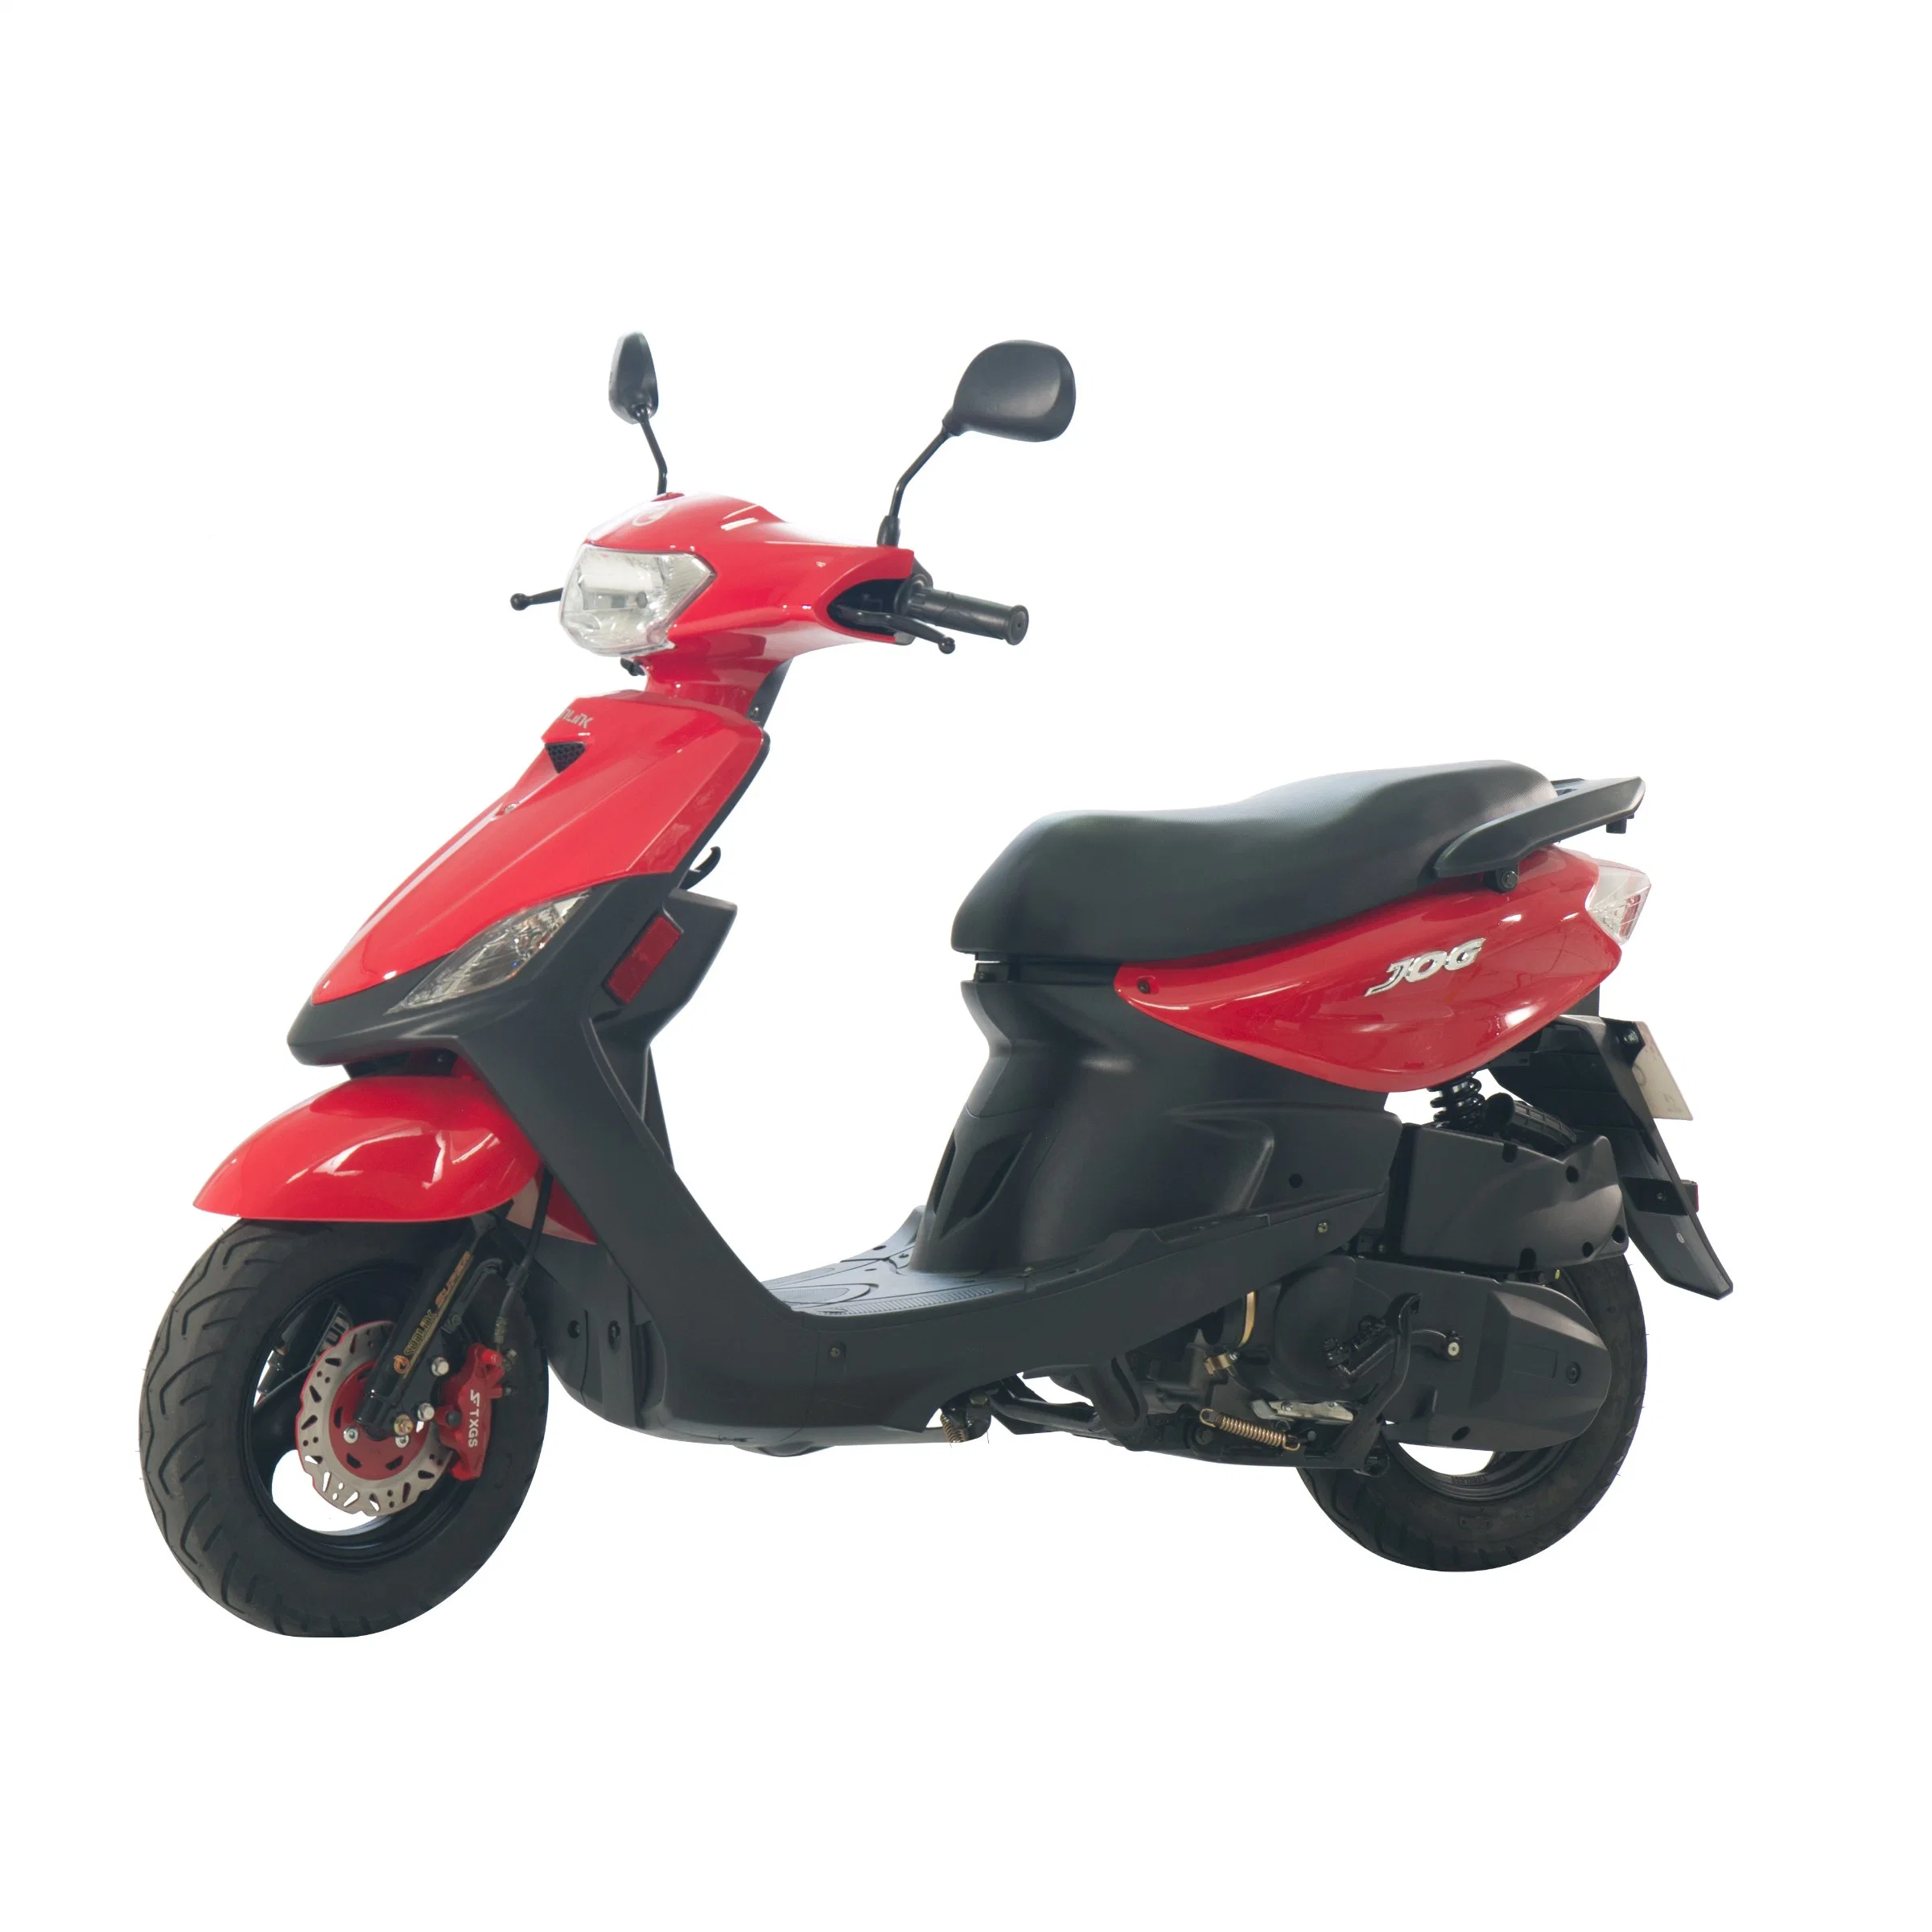 Dama moto Scooter 125cc moto Dame / 150cc moto / 150cc Motocicleta / 49cc Dirt Bike / Motor scooter 50cc